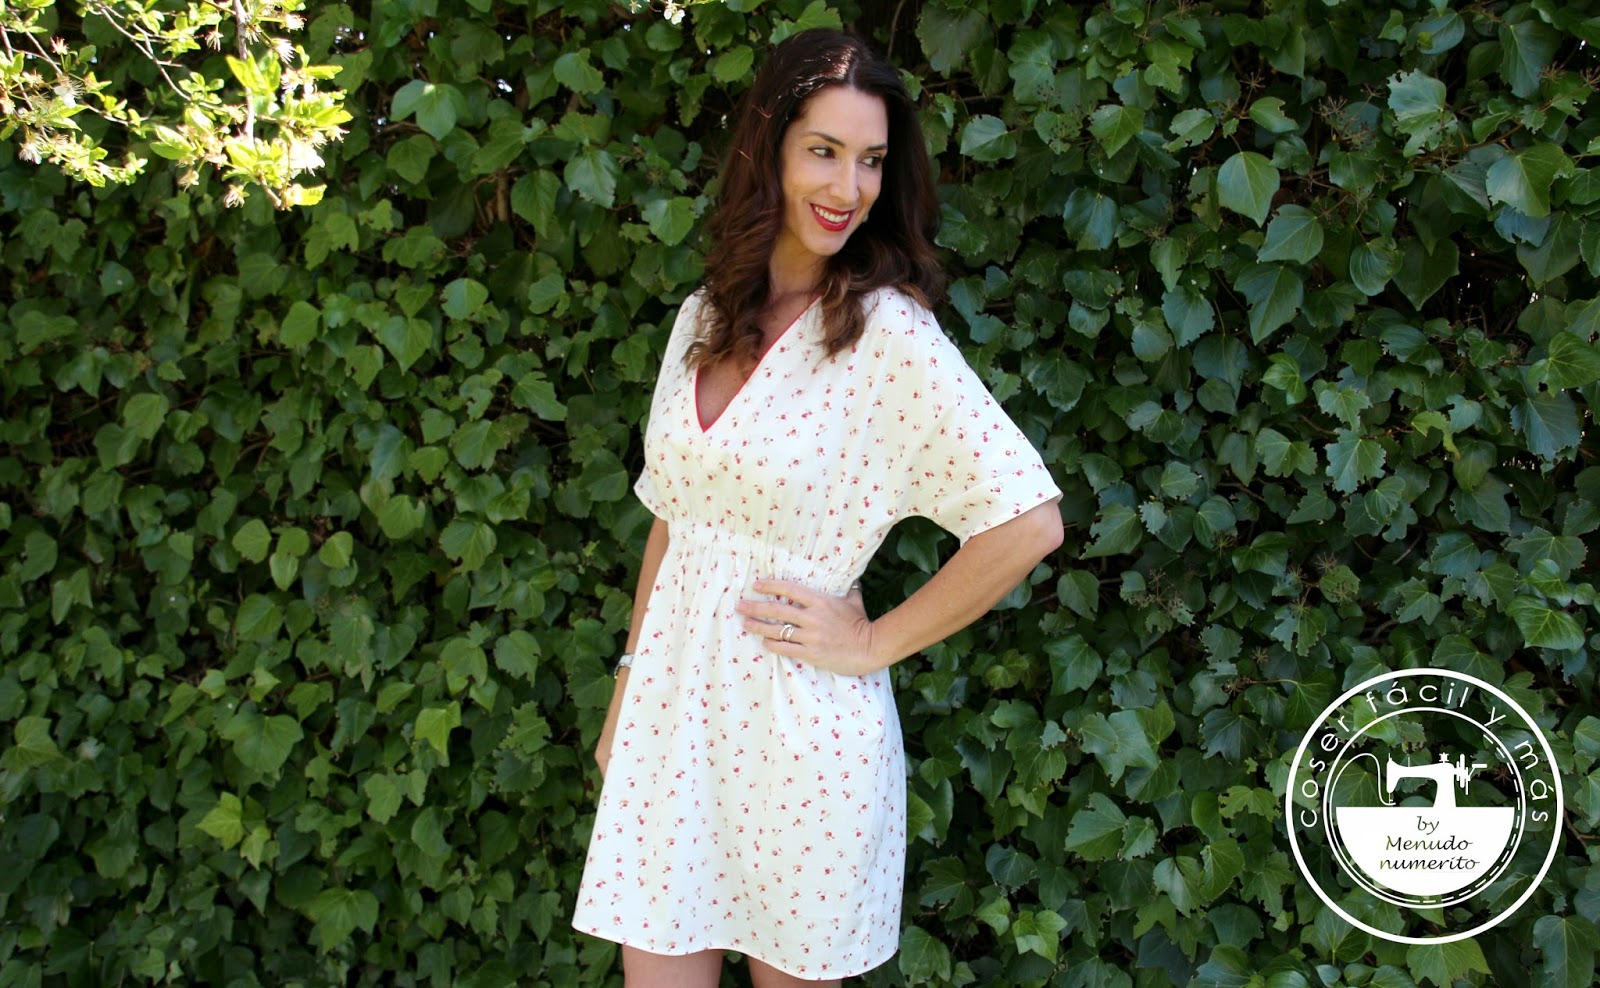 Cómo coser vestido de verano con patrón a medida - El blog de Coser fácil y más by Menudo